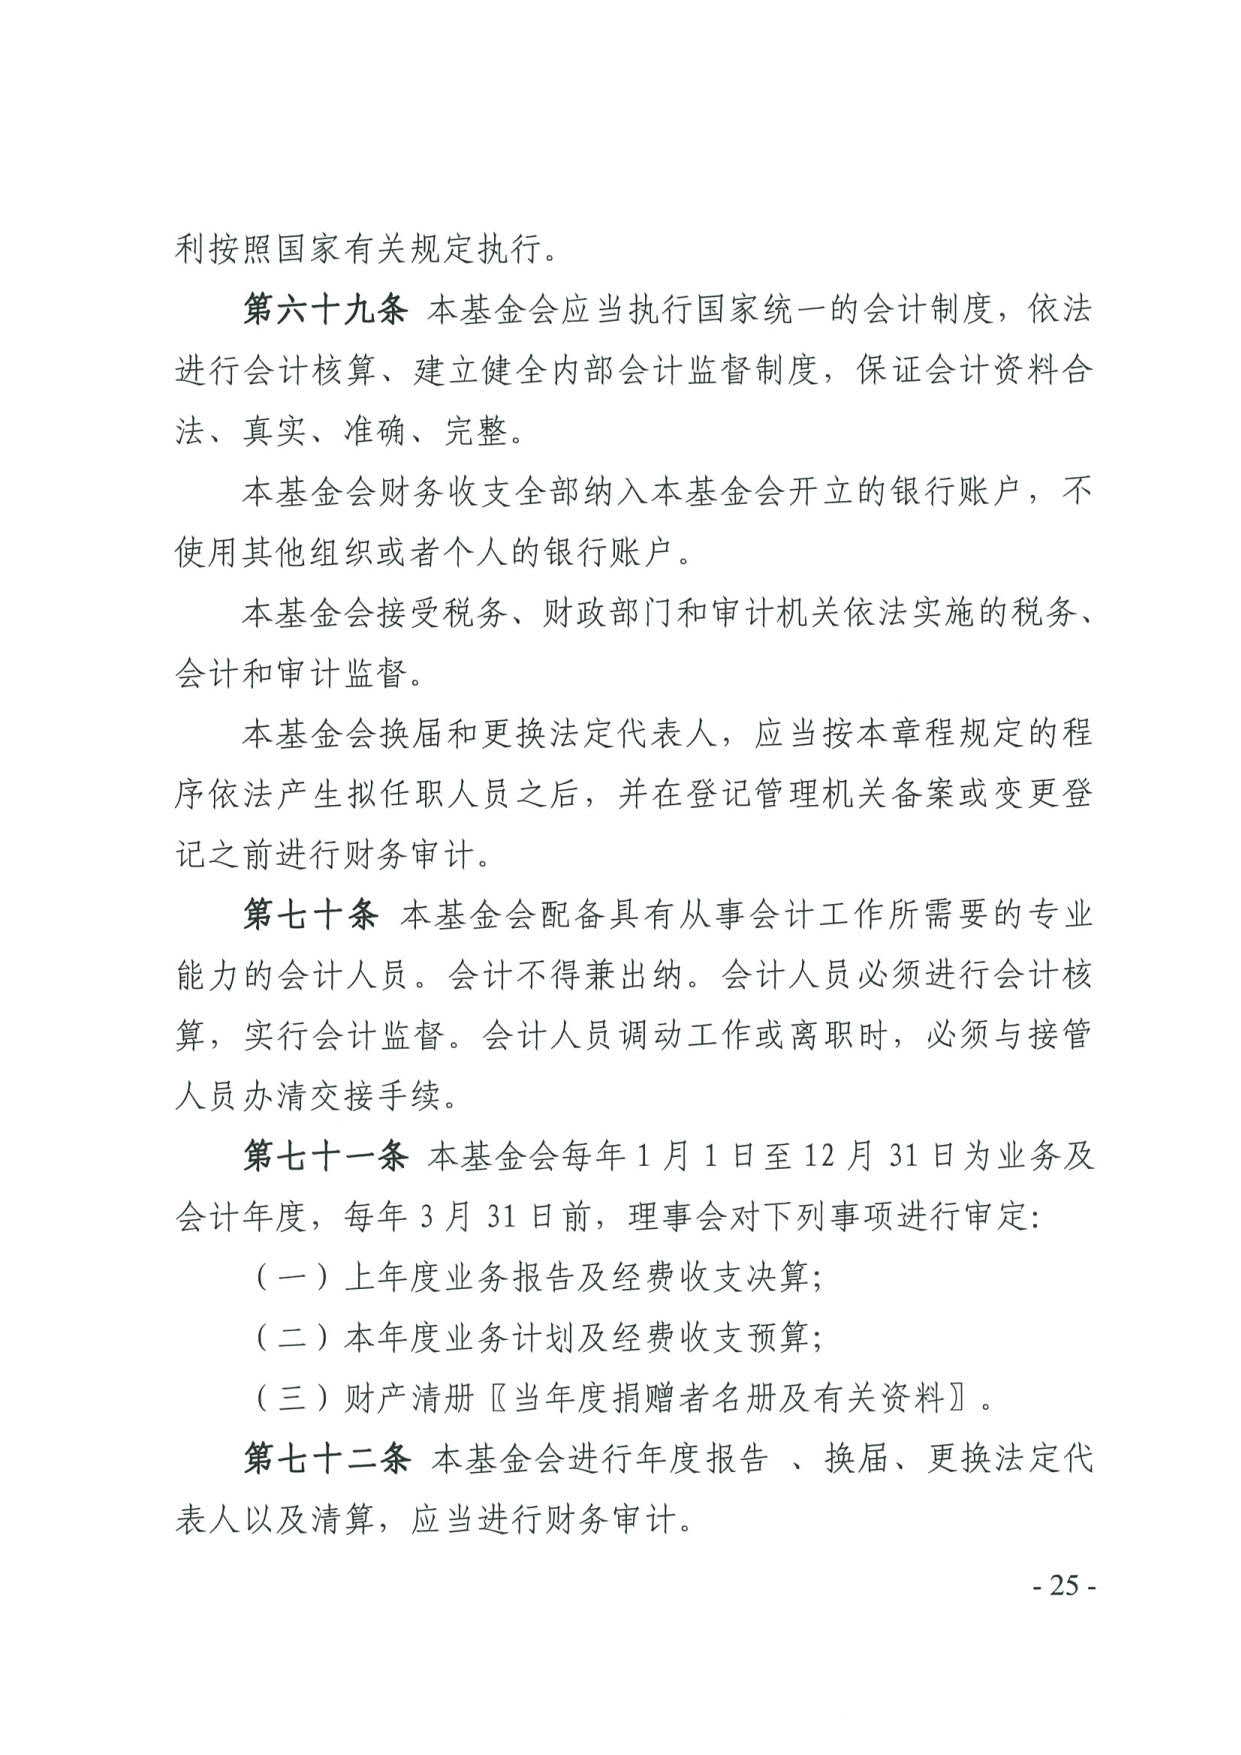 广东省民政厅关于印发《广东省基金会章程示范文本》的通知(4)_25.jpg